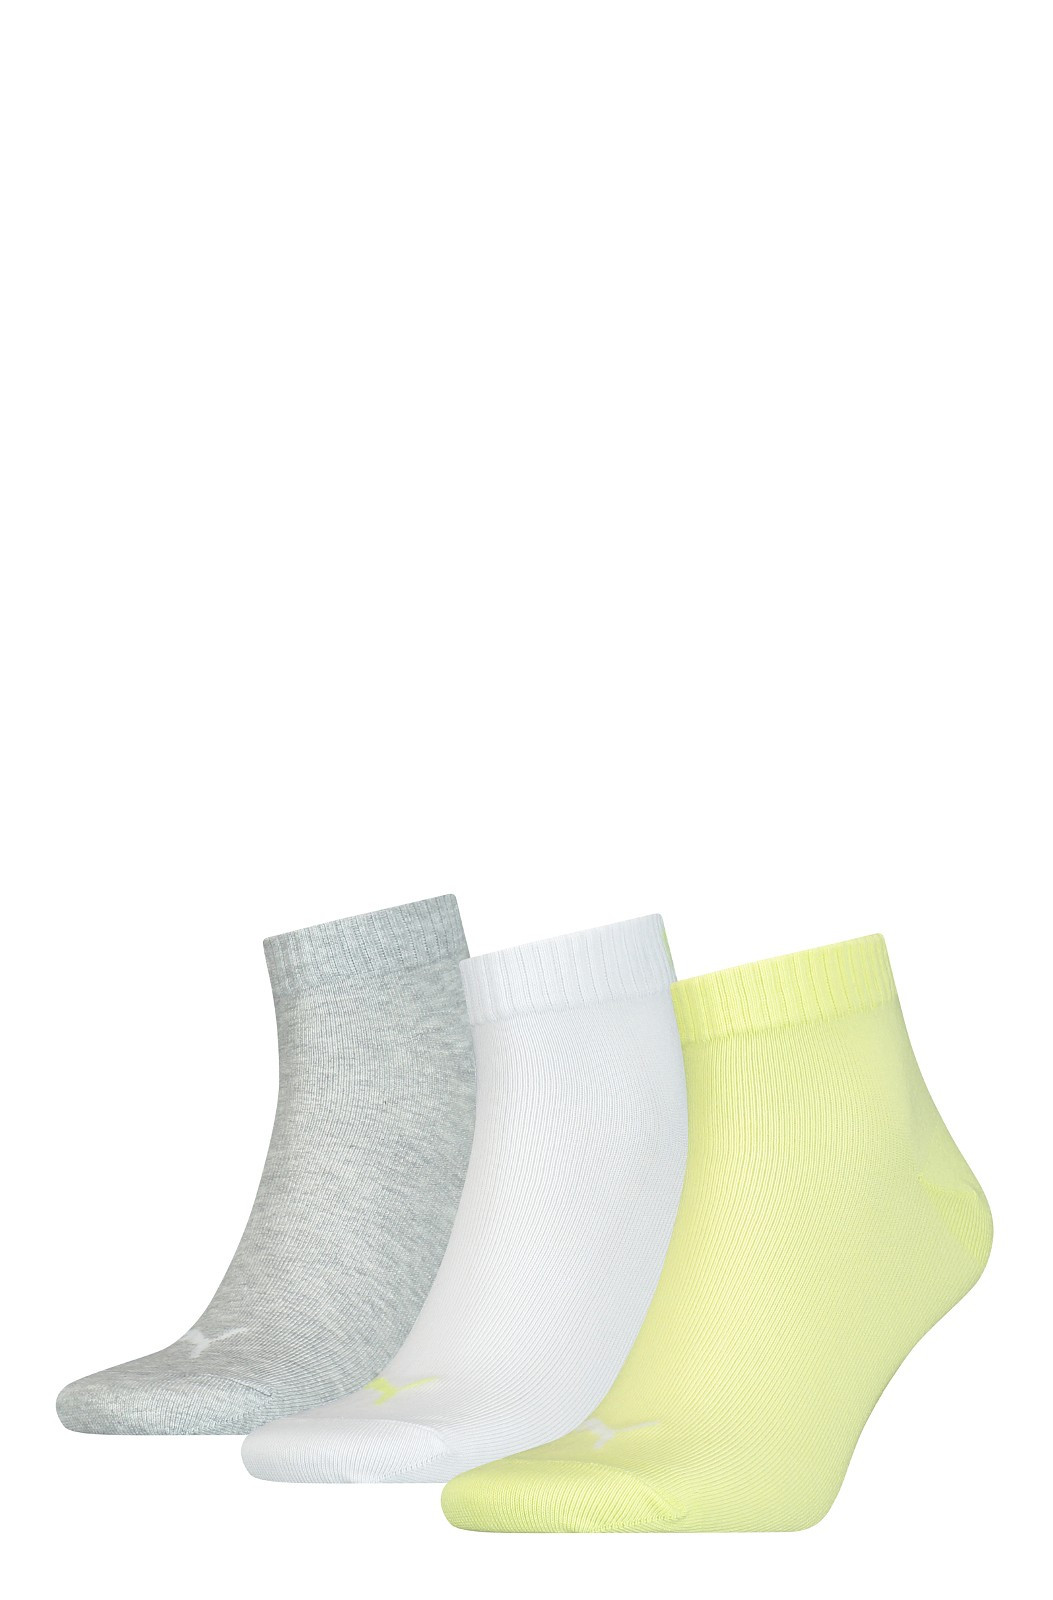 Unisex ponožky 906978 Quarter Soft A3 šedo-bílo-žluté - Puma 43-46